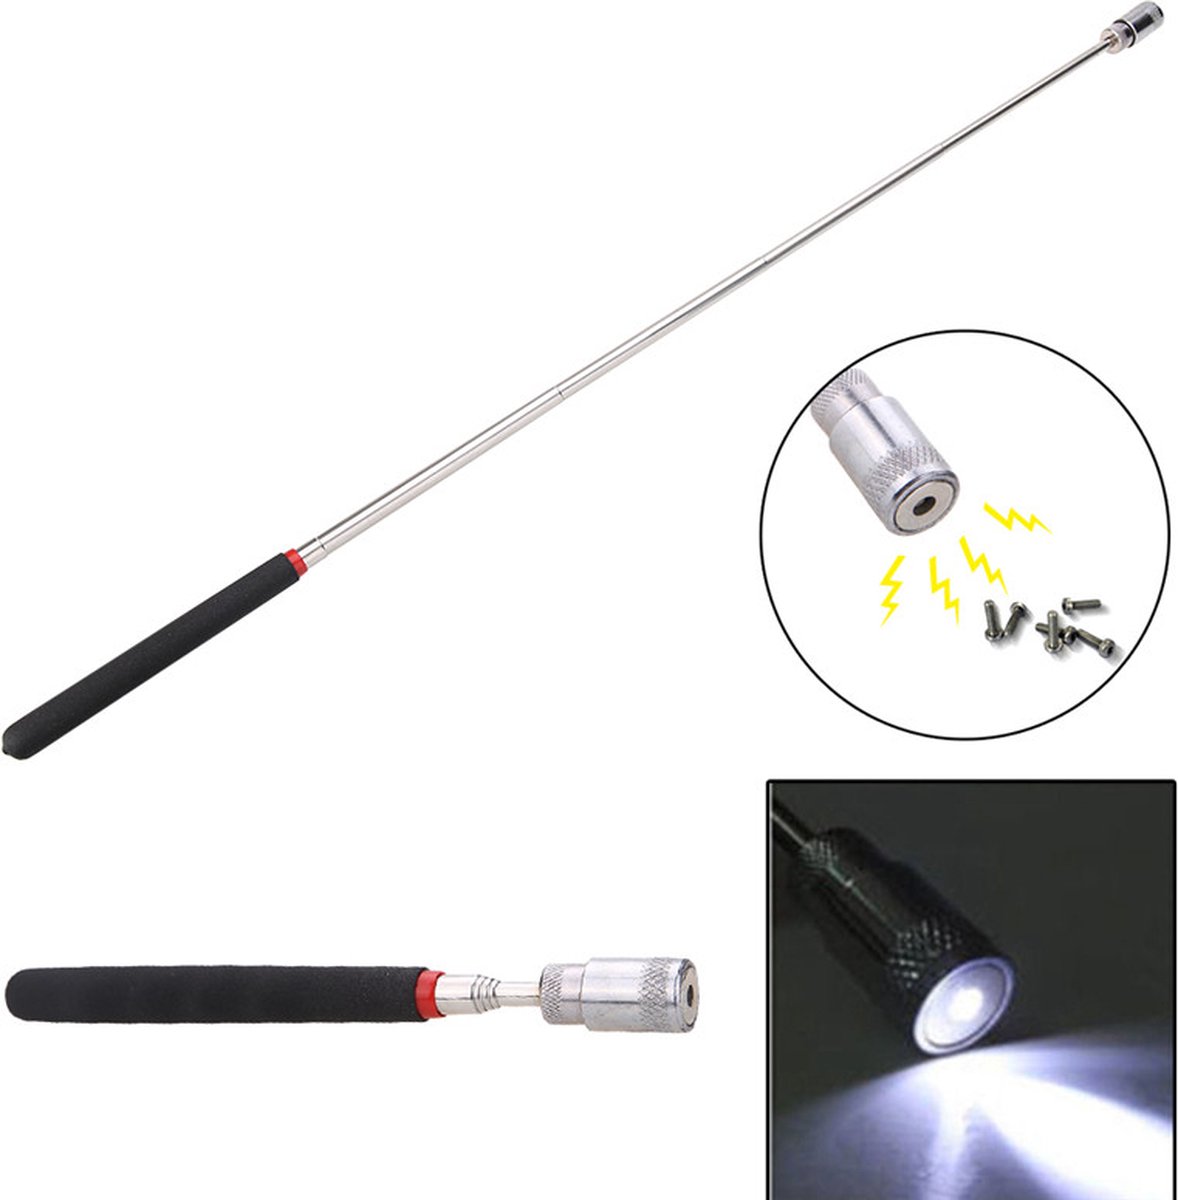 Sterke Telescopische Magneet Pen met LED lamp - Magneet stok - Verstelbaar - Uitschuifbaar - Lang Bereik 63CM - Pick up Stick - Schroeven pakken - 2,5KG kracht - Metaal laten vallen - Geld pakker